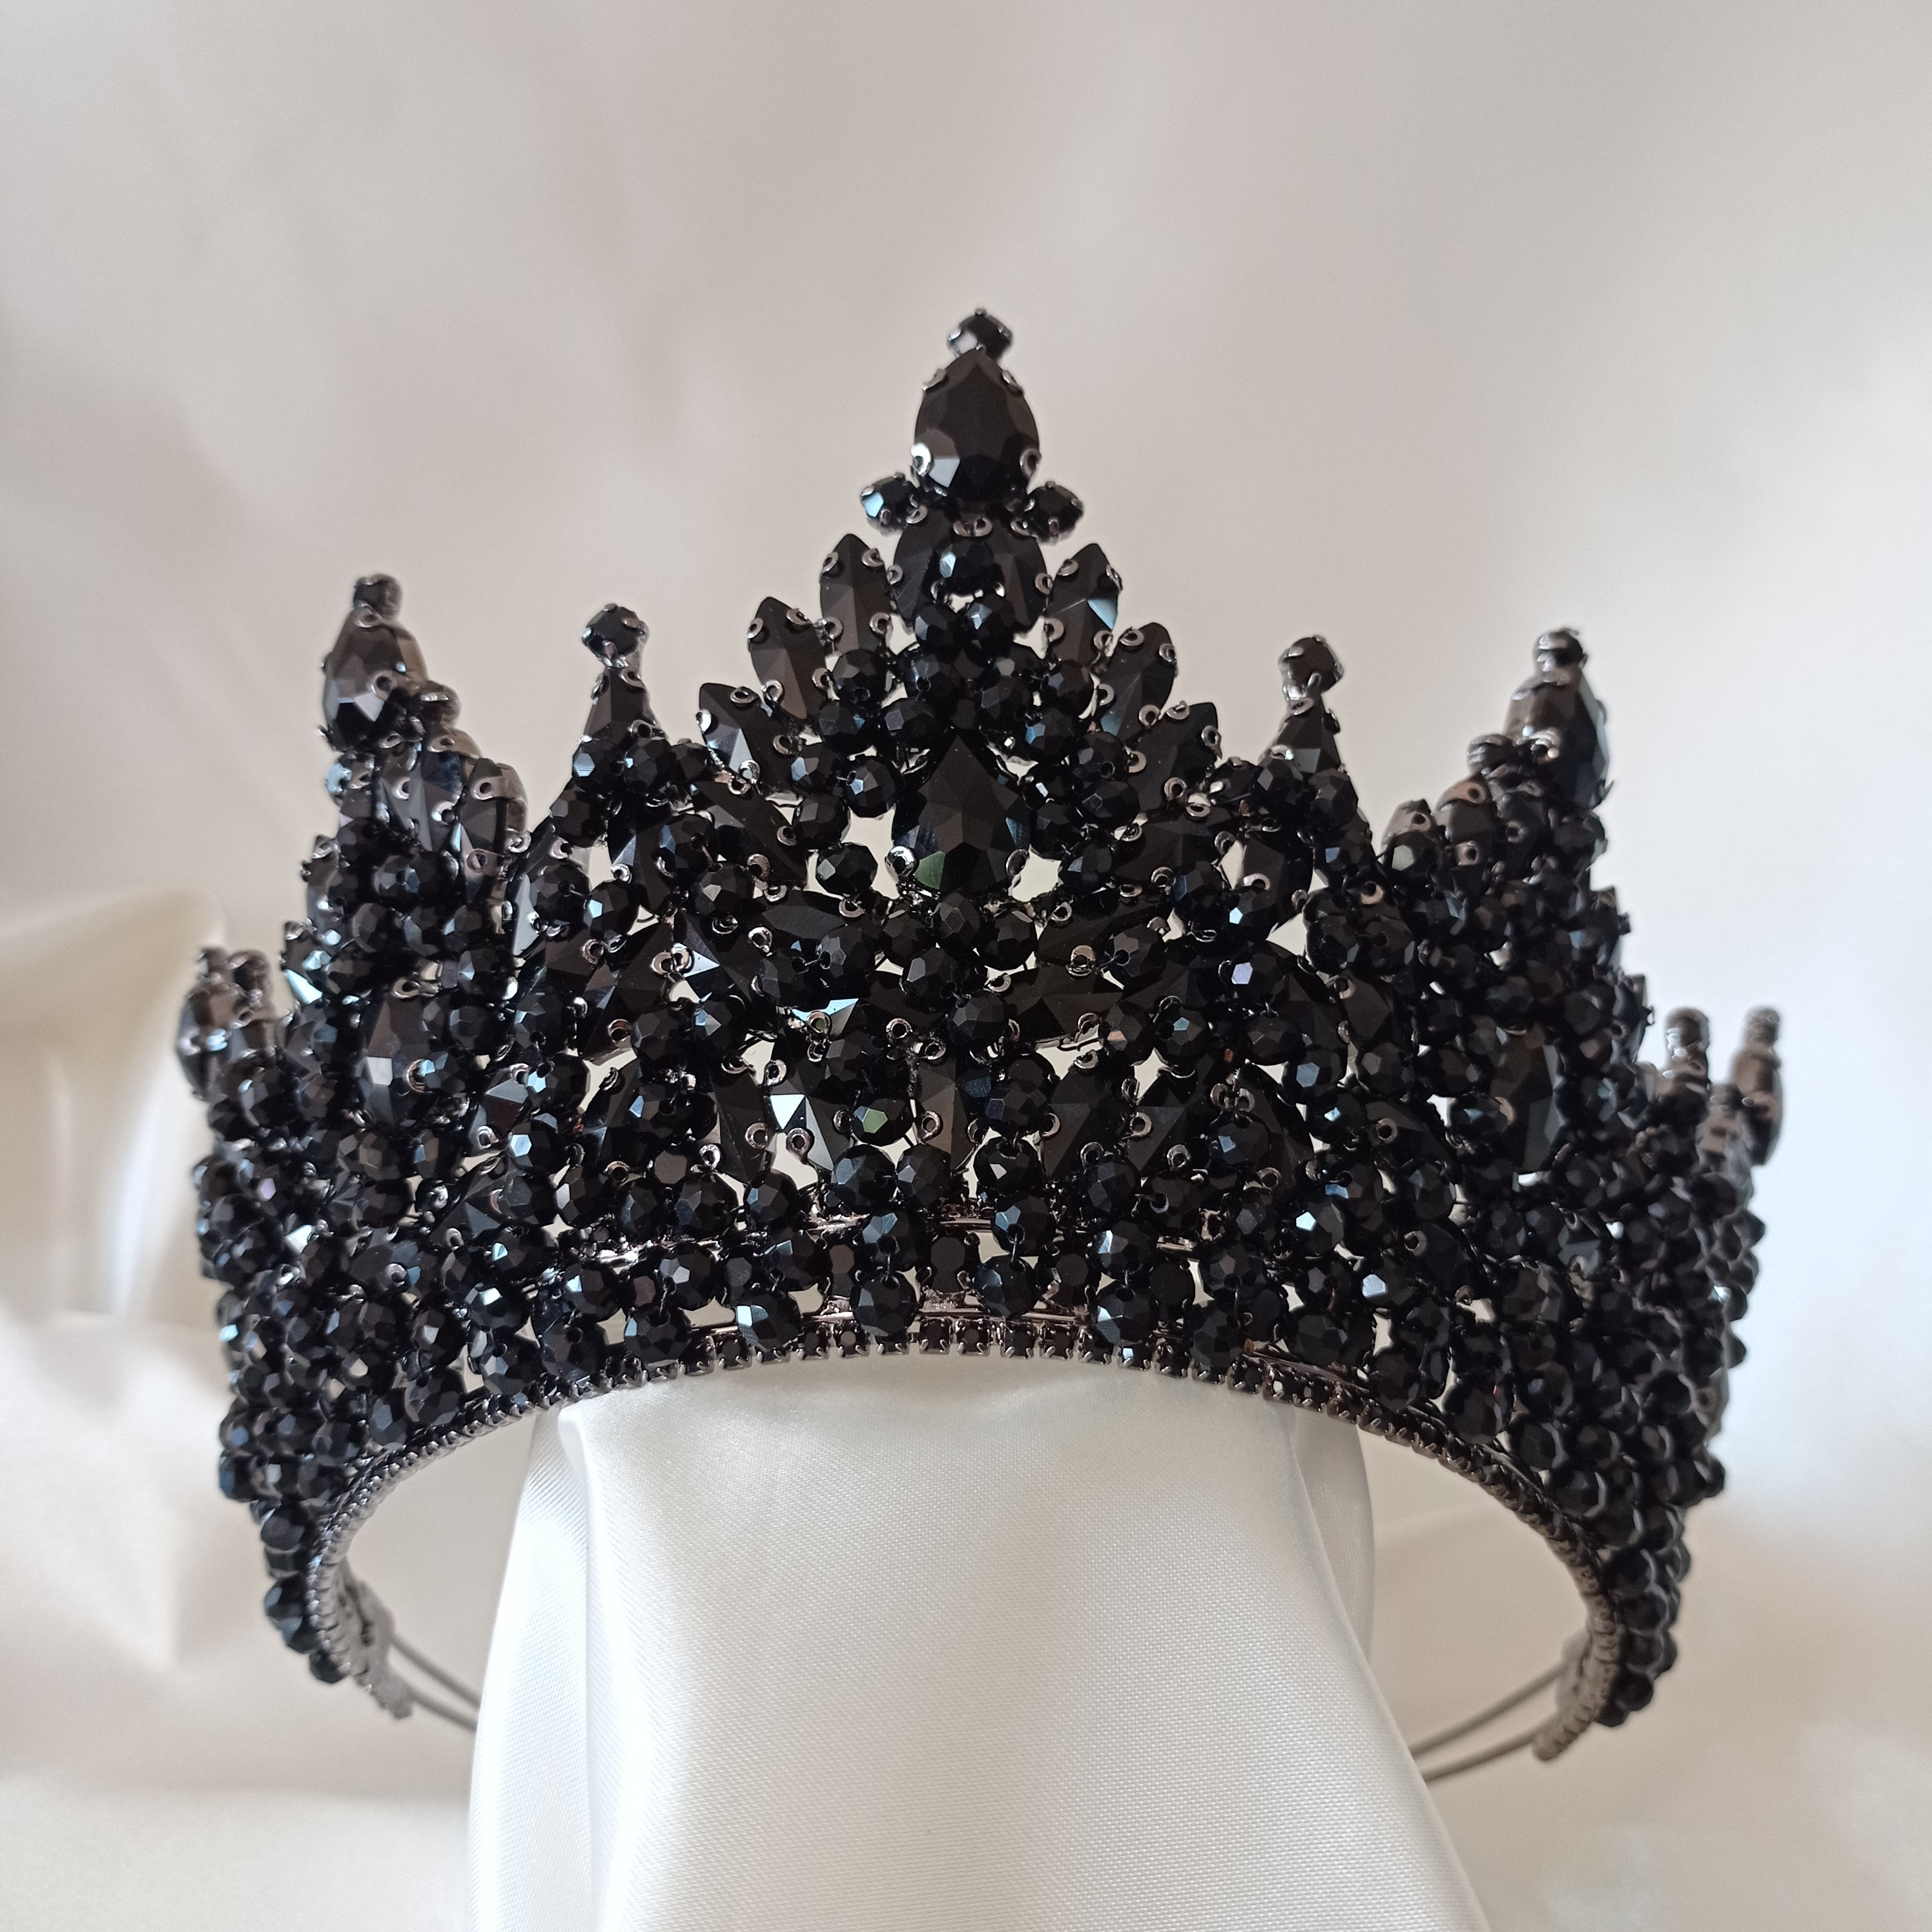 Black Queen Crowns